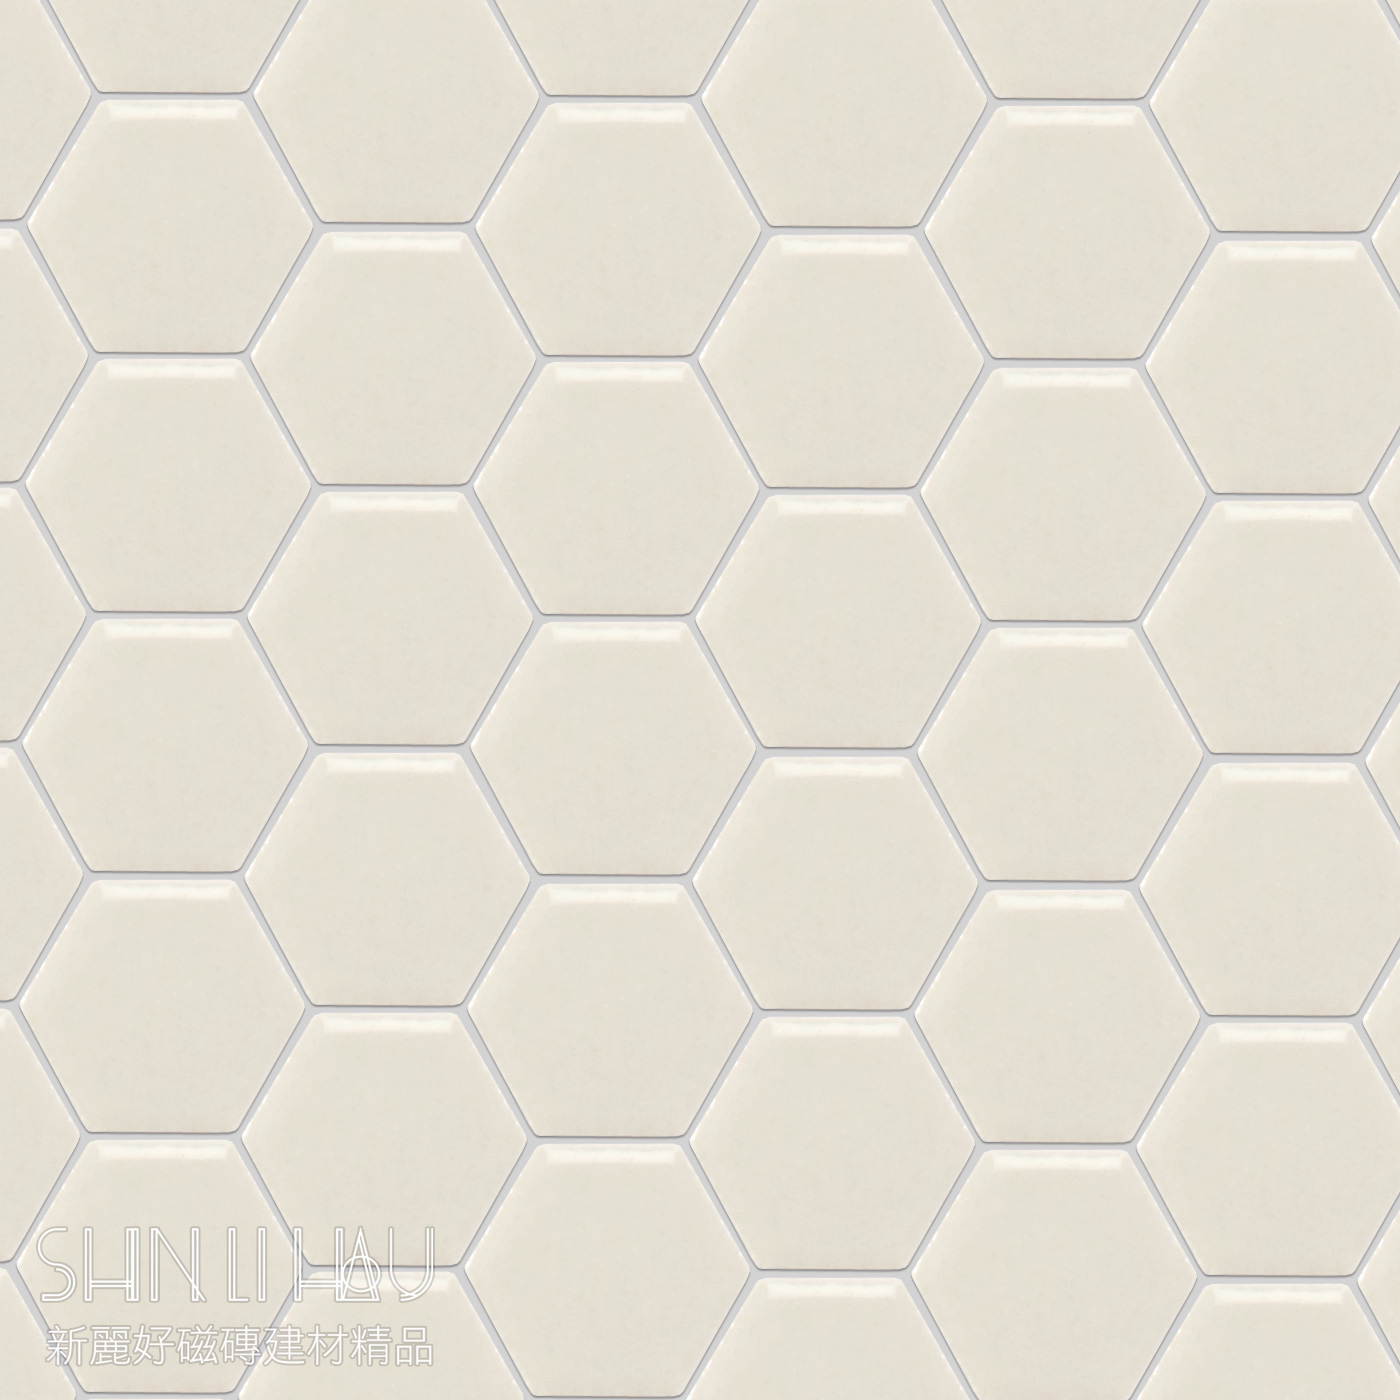 彩石六角形馬賽克(12X14顆/張) - 6705A921